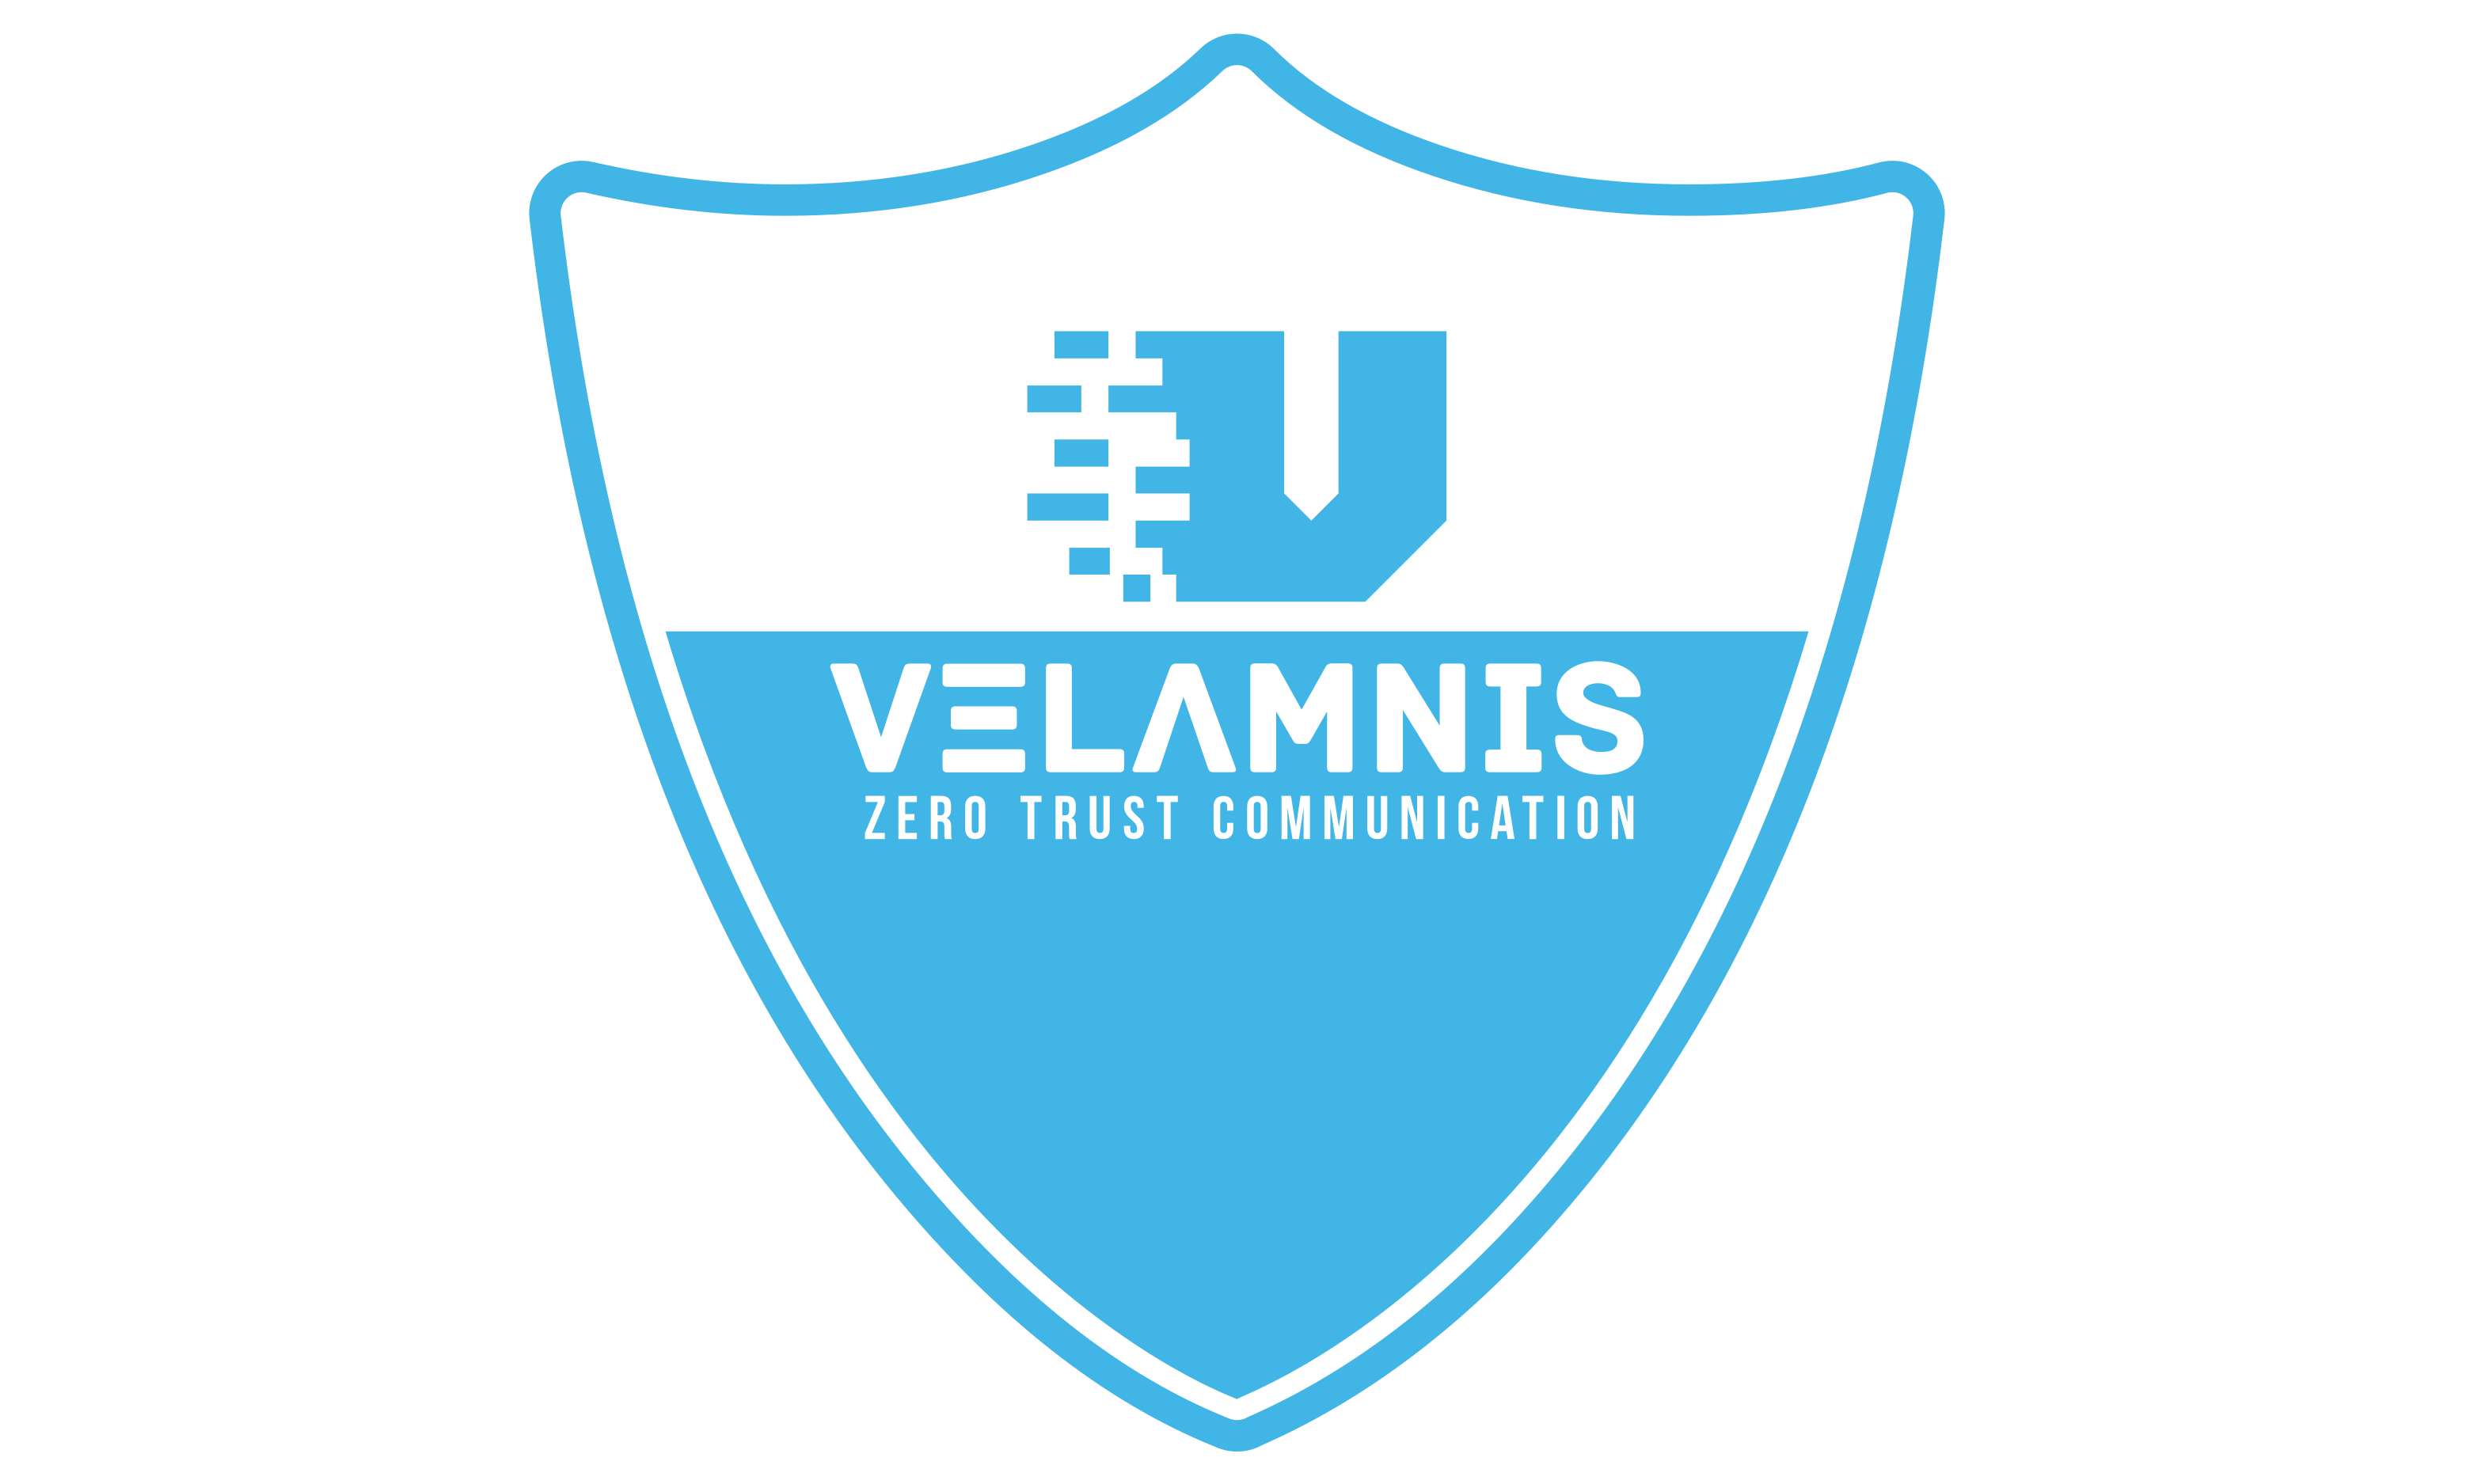 Velamnis logo